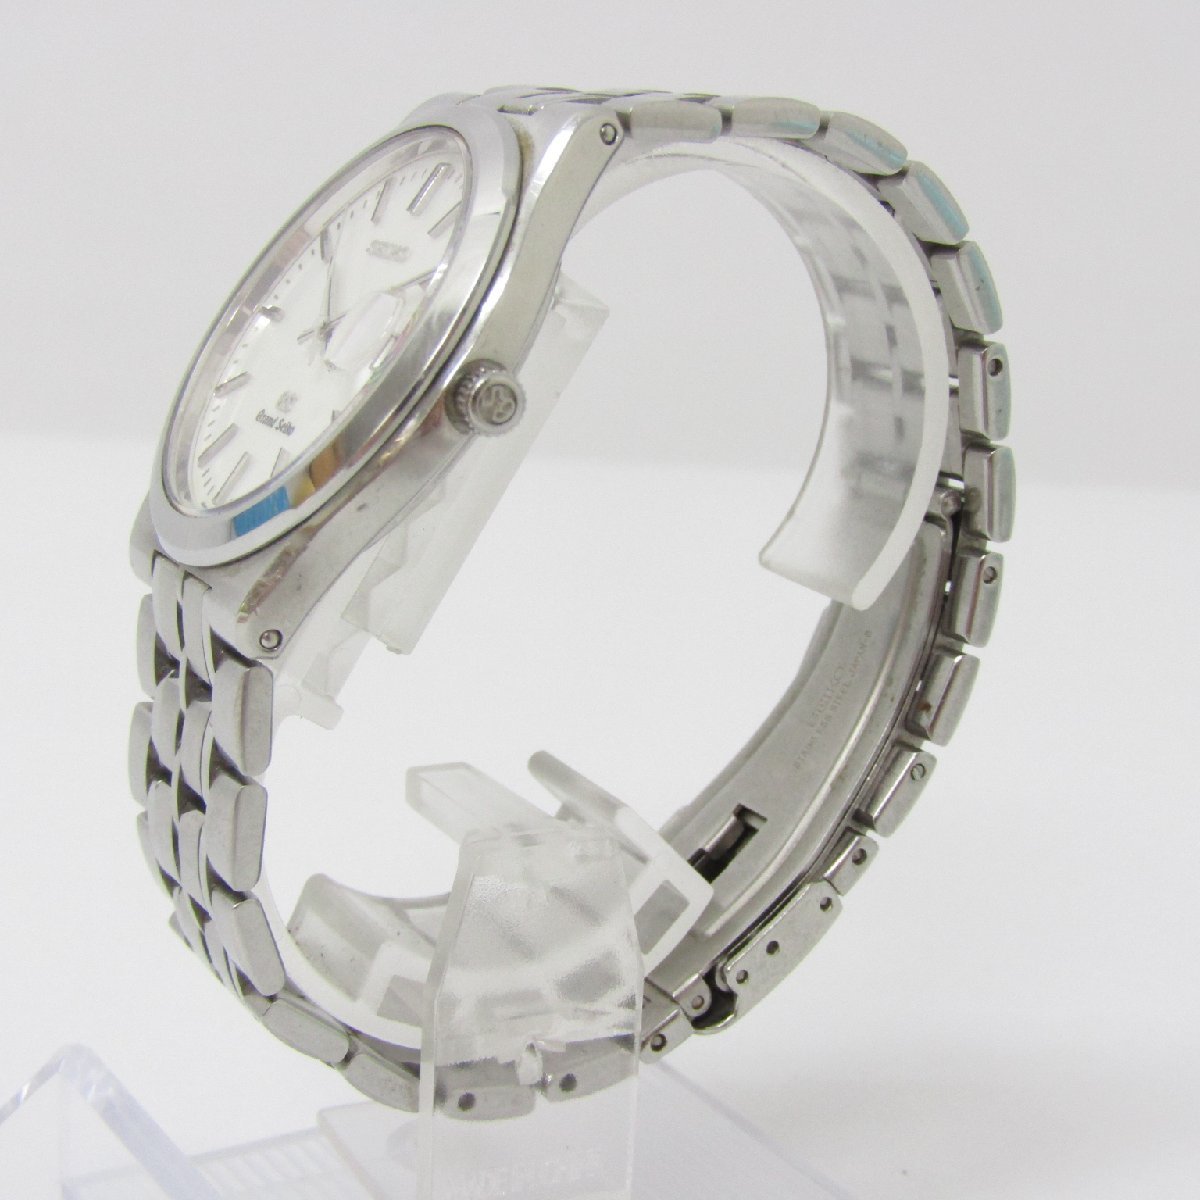 Grand Seiko グランドセイコー デイト SBGG007 8N65-9010 クォーツ メンズ 腕時計 ▼AC24673_画像2